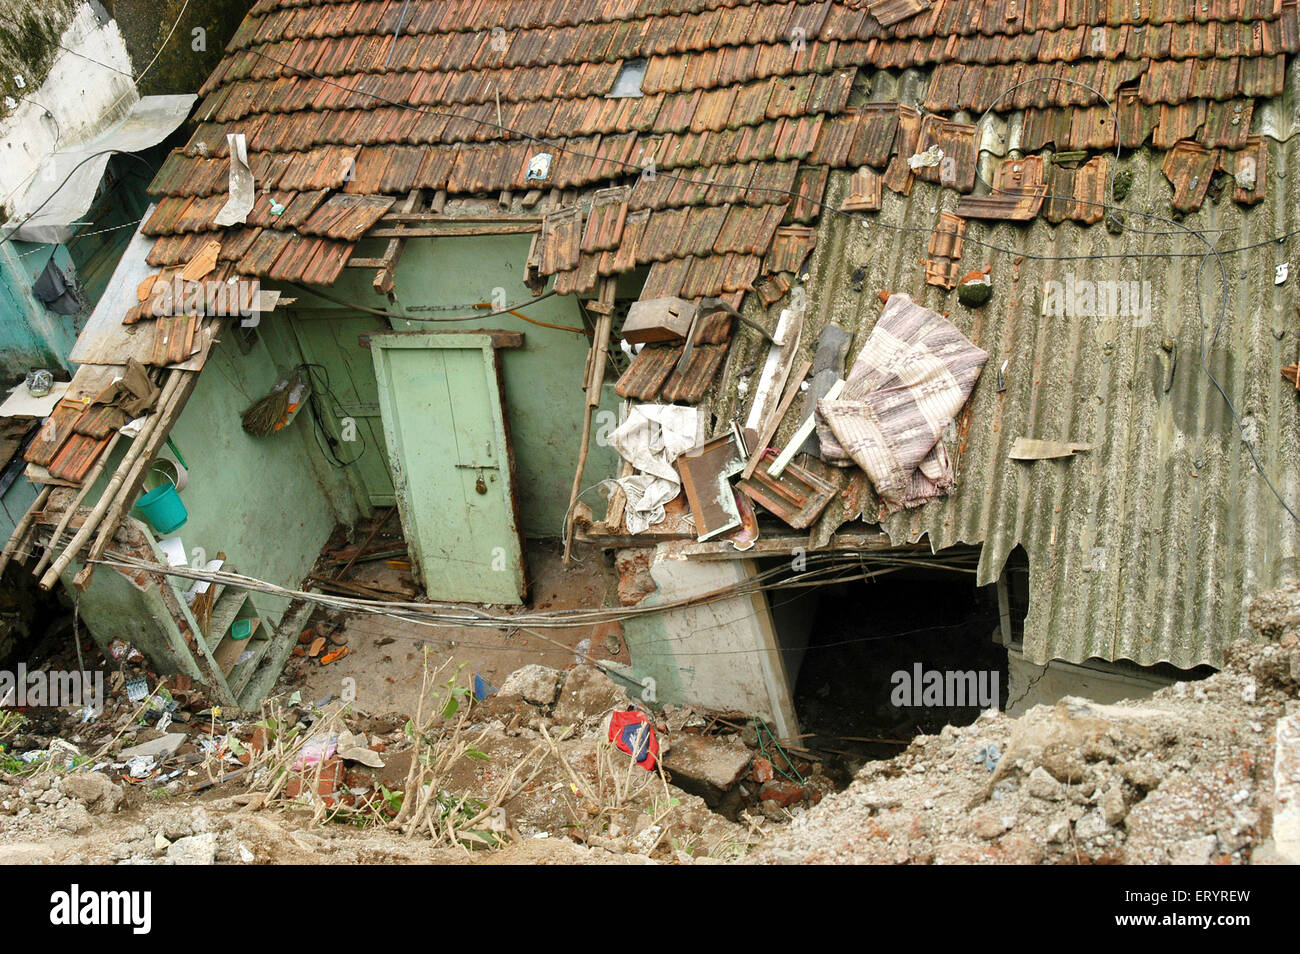 Hut destroyed after landslide , Bhandup , Bombay, Mumbai, Maharashtra, India, Asia Stock Photo